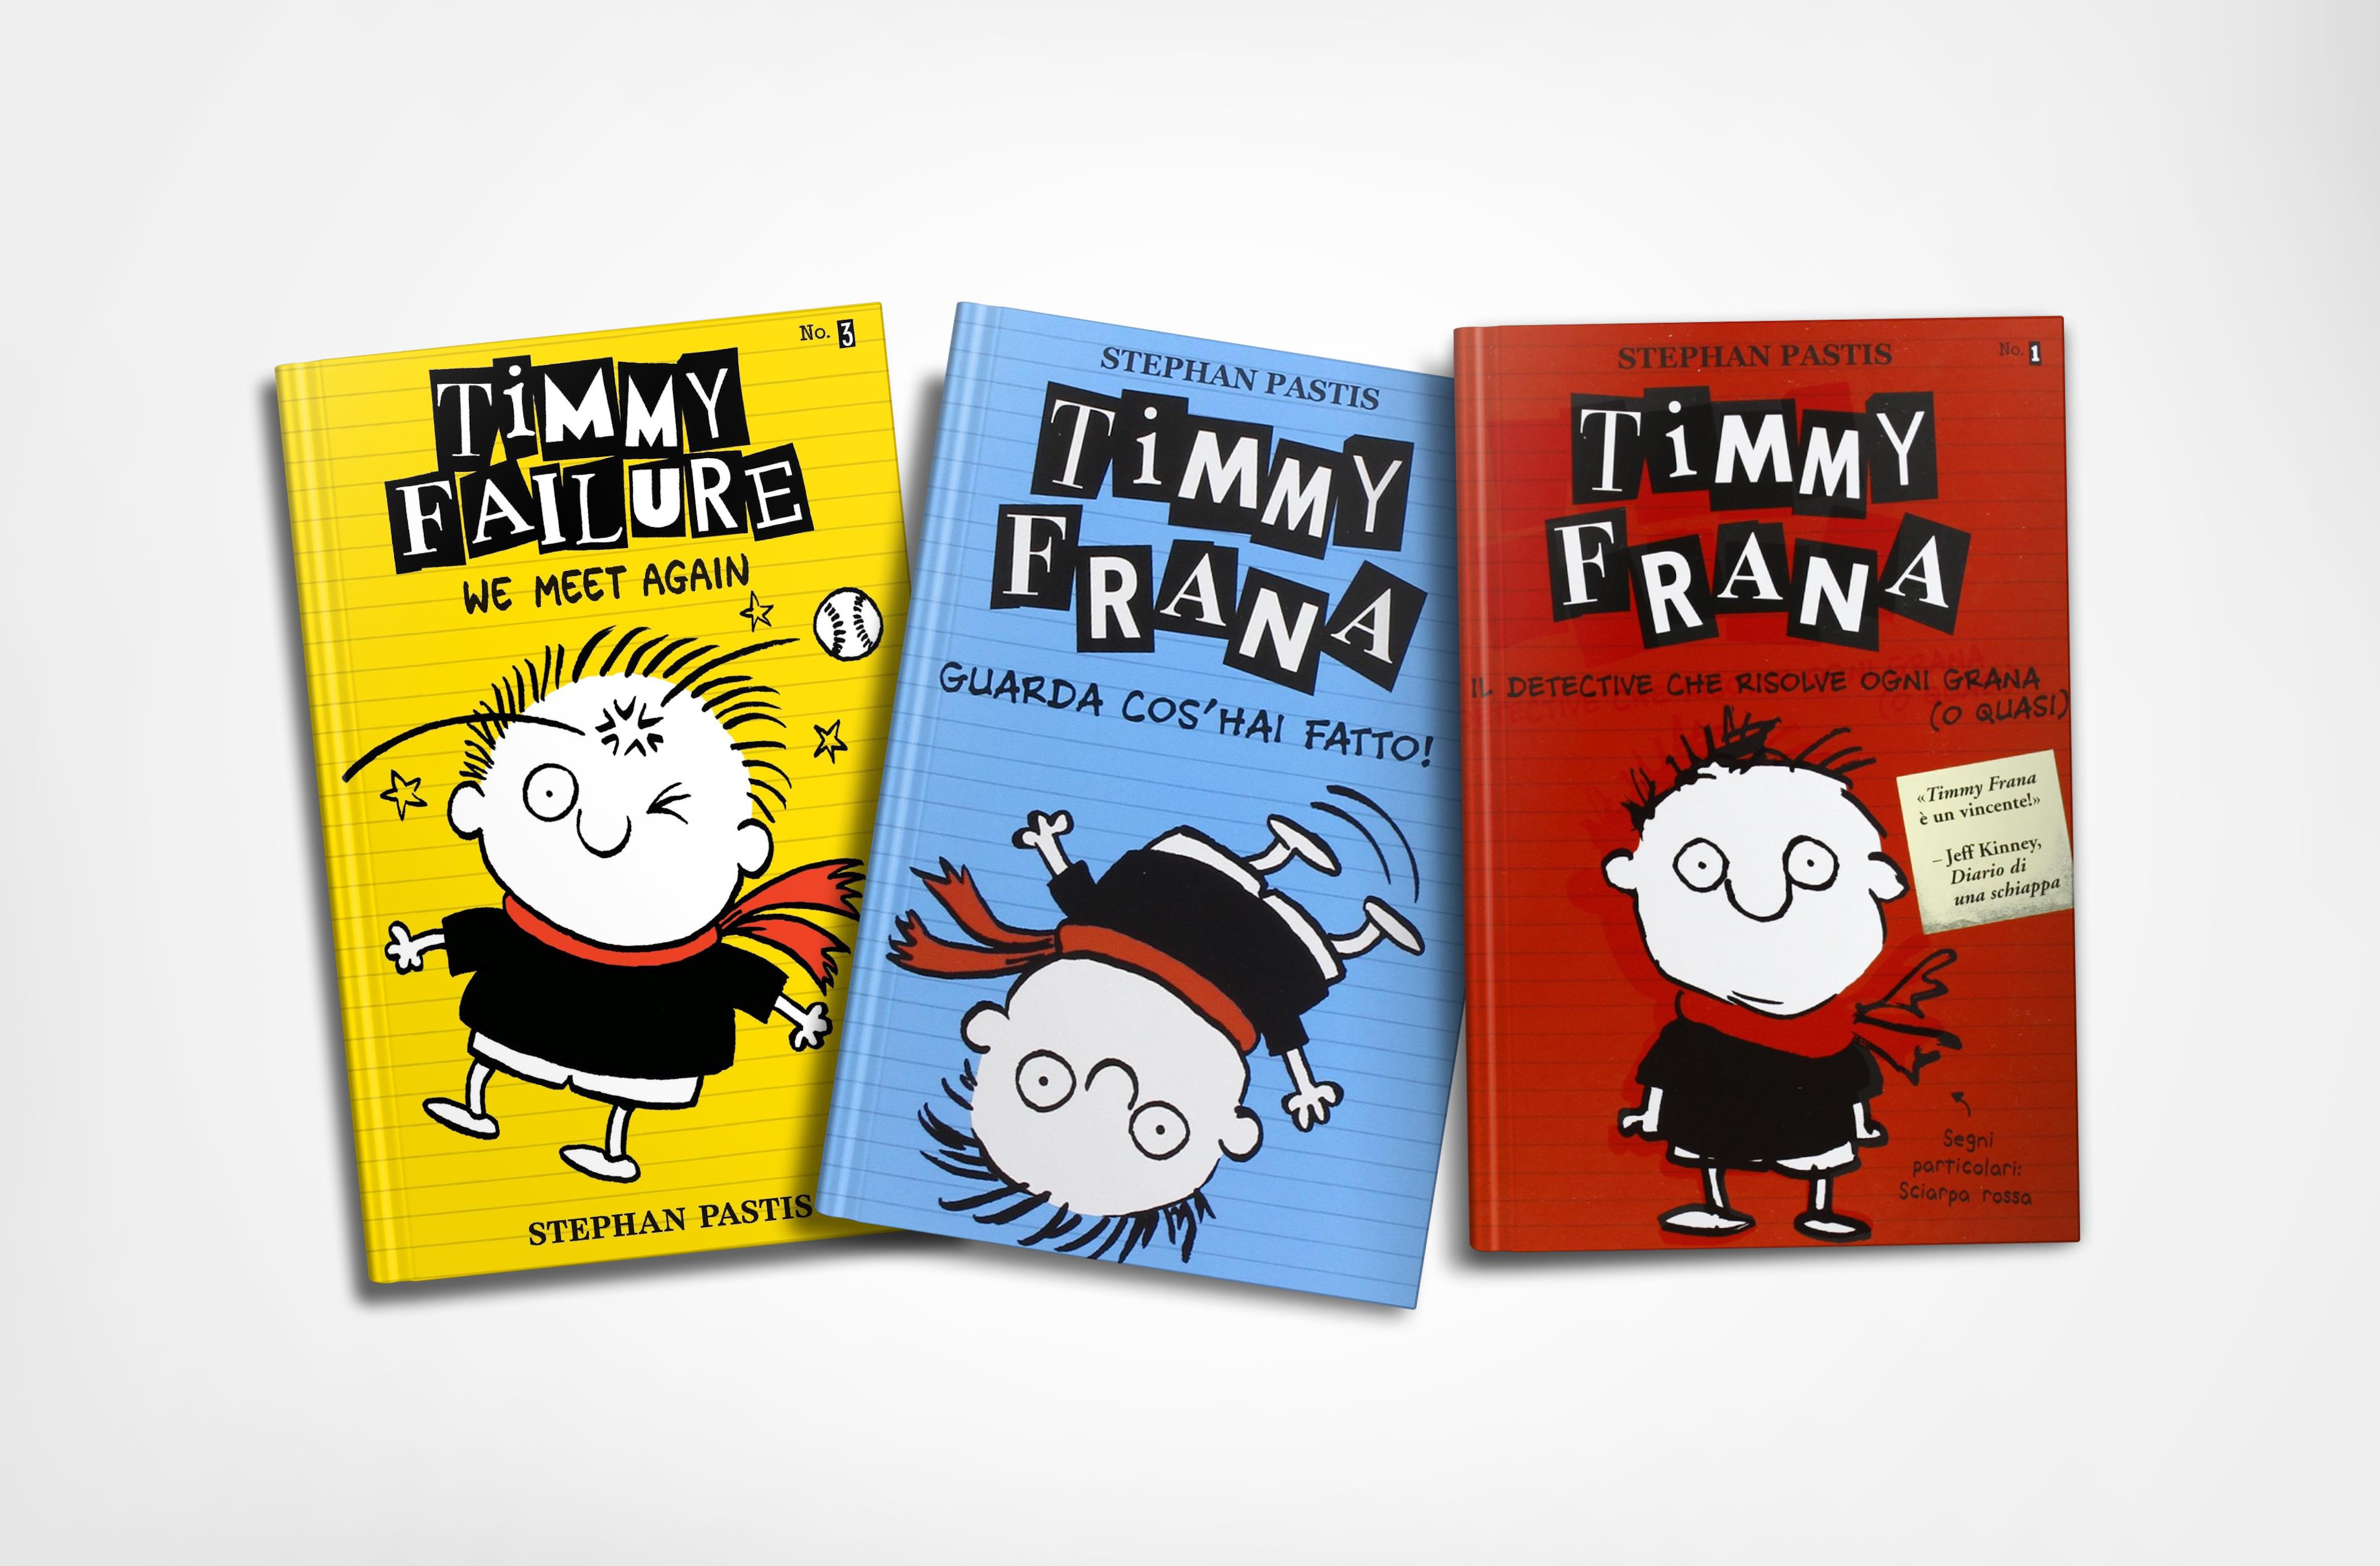 Un dettaglio della copertina del secondo volume in italiano dedicato a Timmy Frana